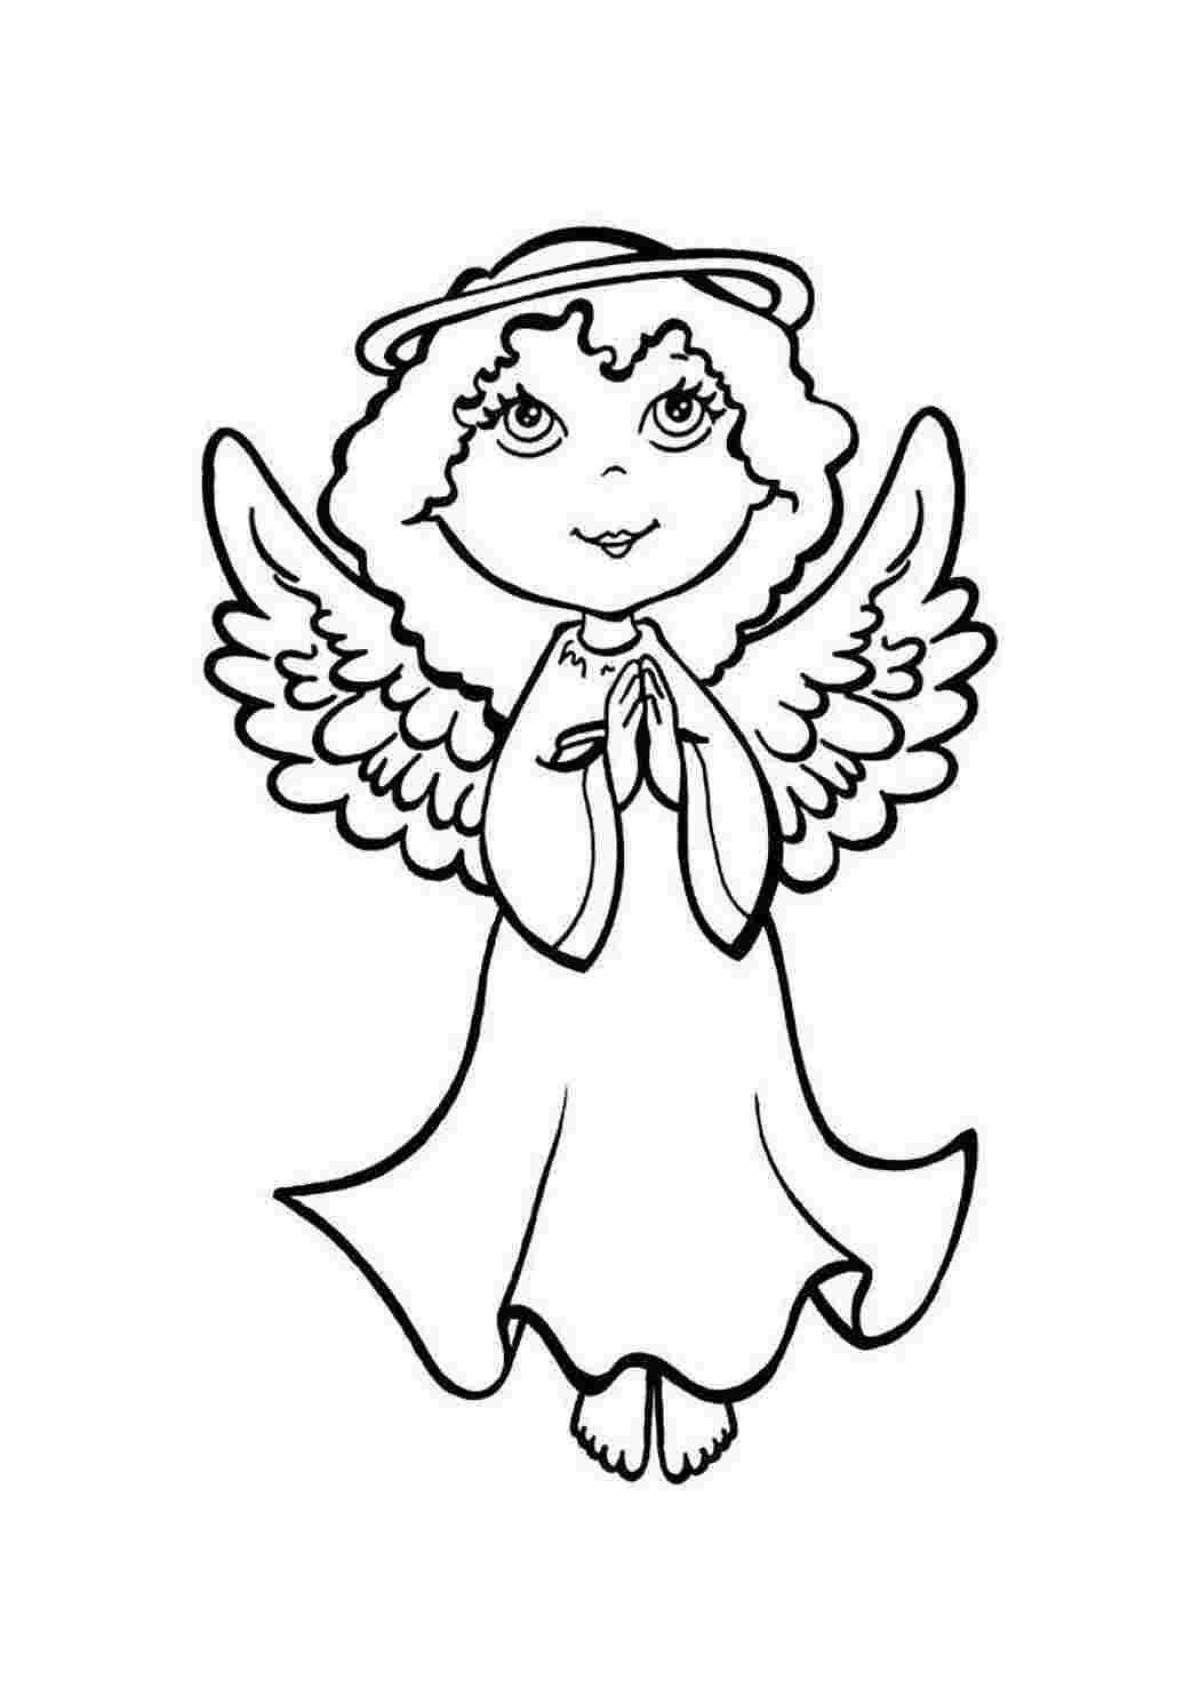 Радостная раскраска ангел с крыльями для детей